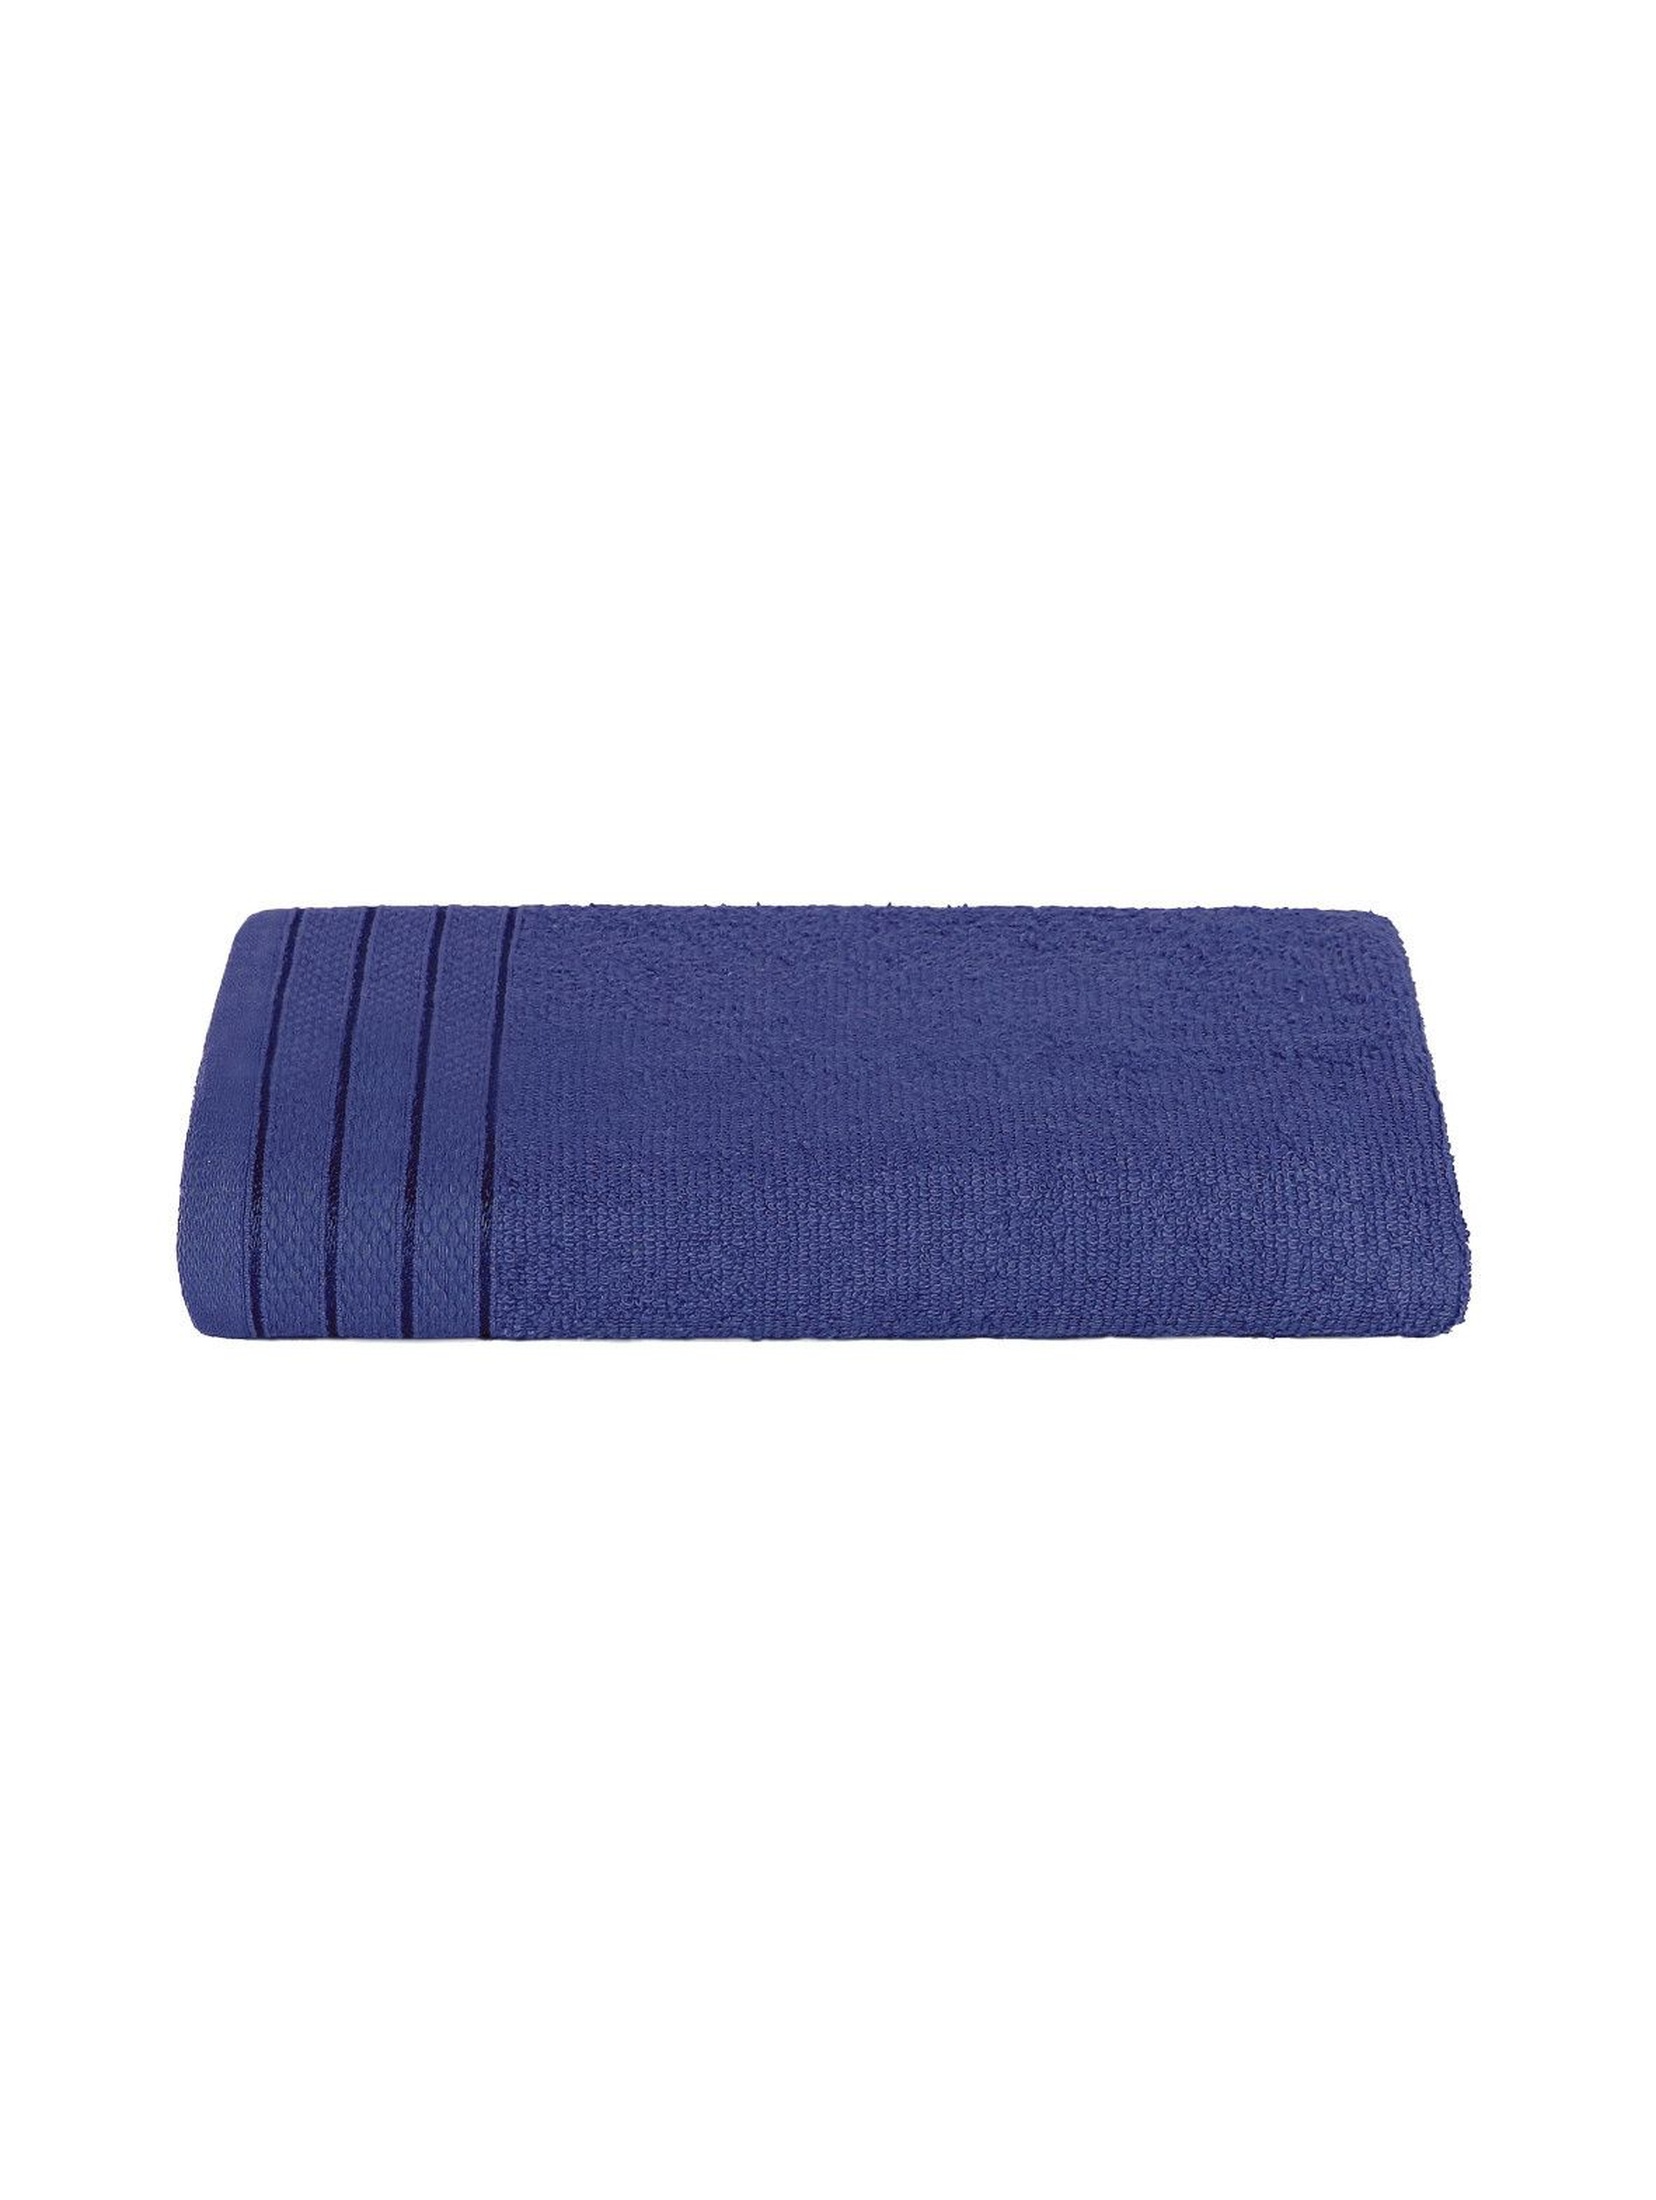 Bawełniany ręcznik w kolorze granatowym 50x90 cm